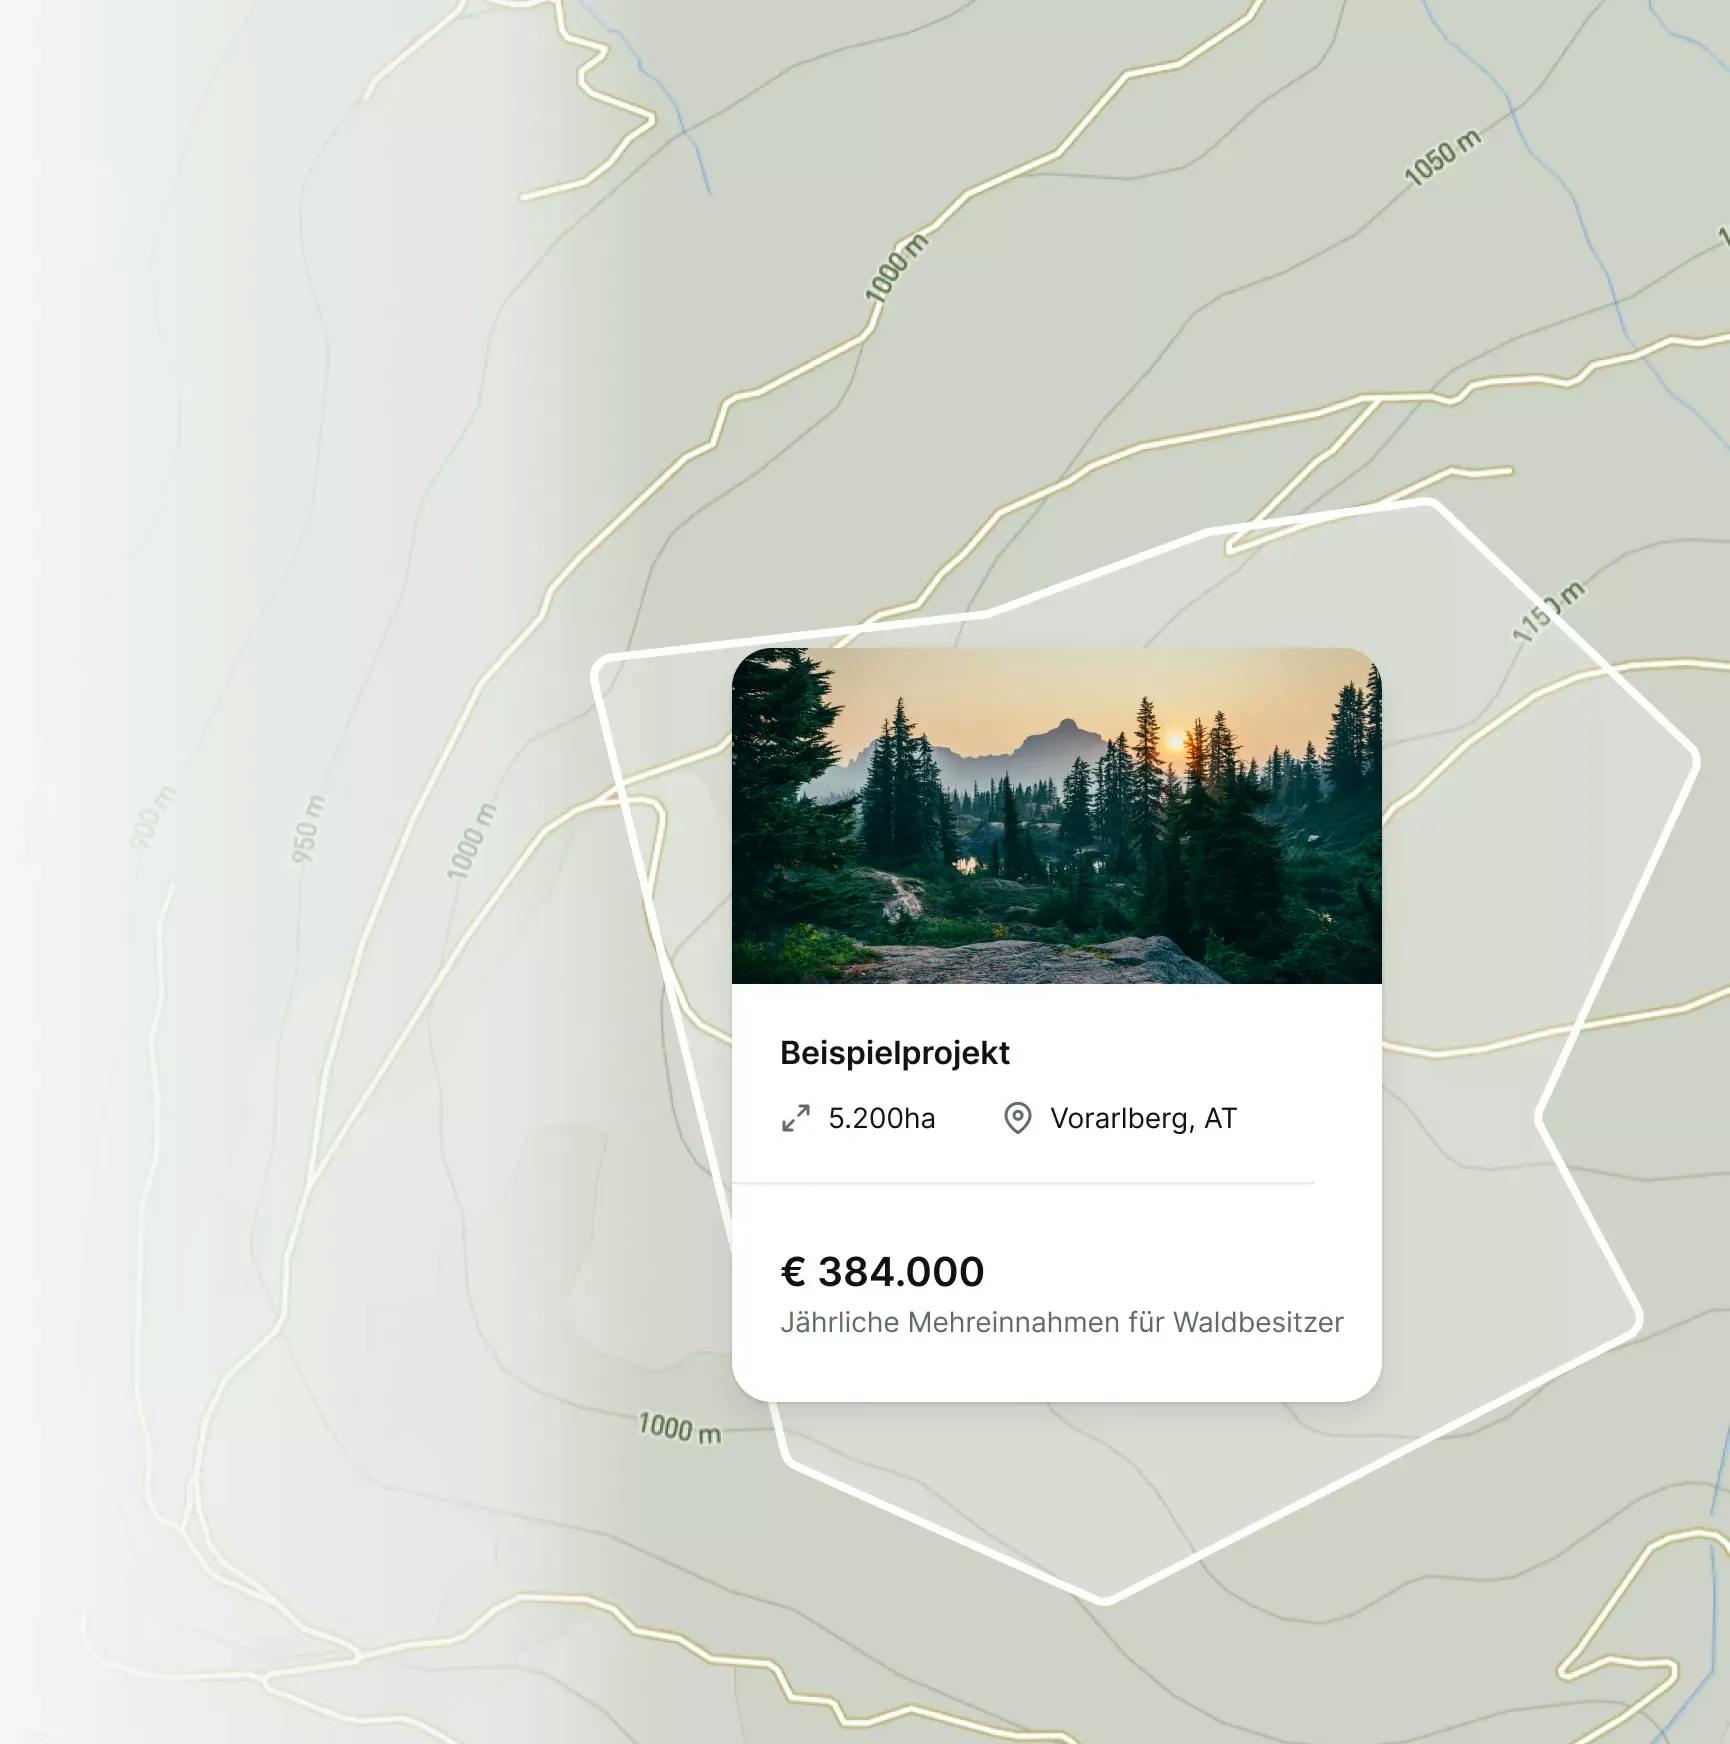 Karte mit einem Beispielprojekt, das zeigt, dass ein Projekt zusätzliche Einnahmen von 384,000€ pro Jahr macht.